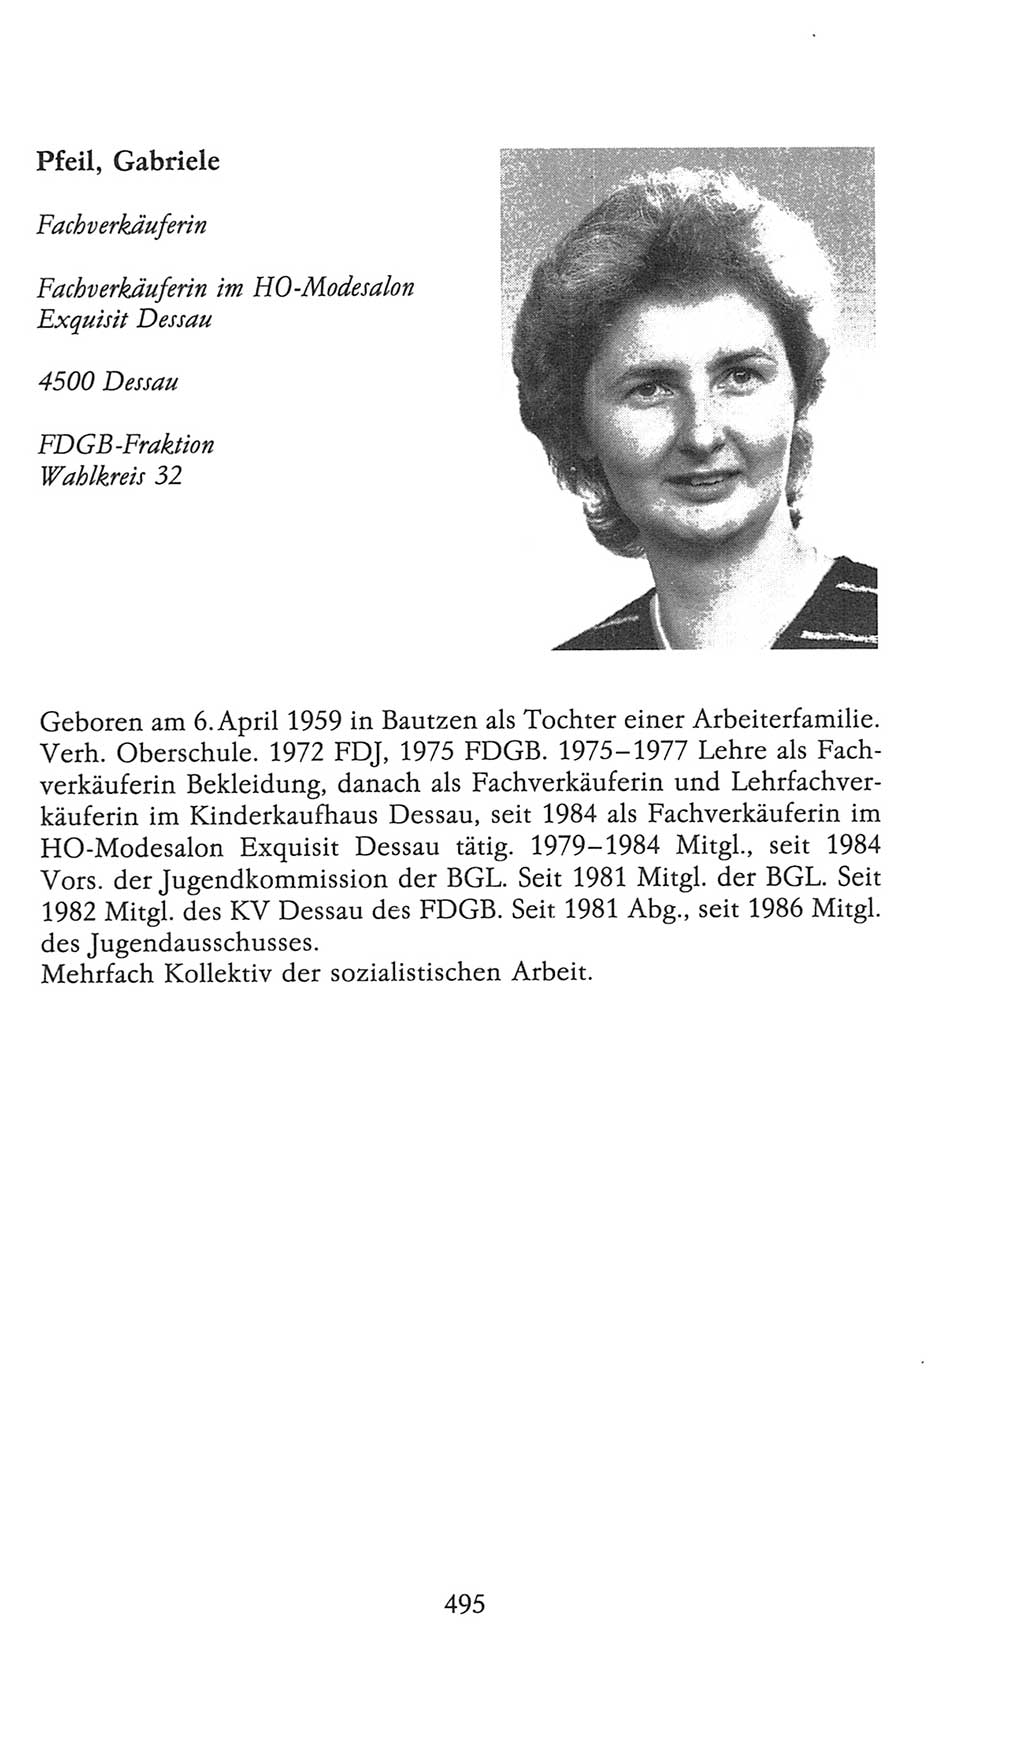 Volkskammer (VK) der Deutschen Demokratischen Republik (DDR), 9. Wahlperiode 1986-1990, Seite 495 (VK. DDR 9. WP. 1986-1990, S. 495)